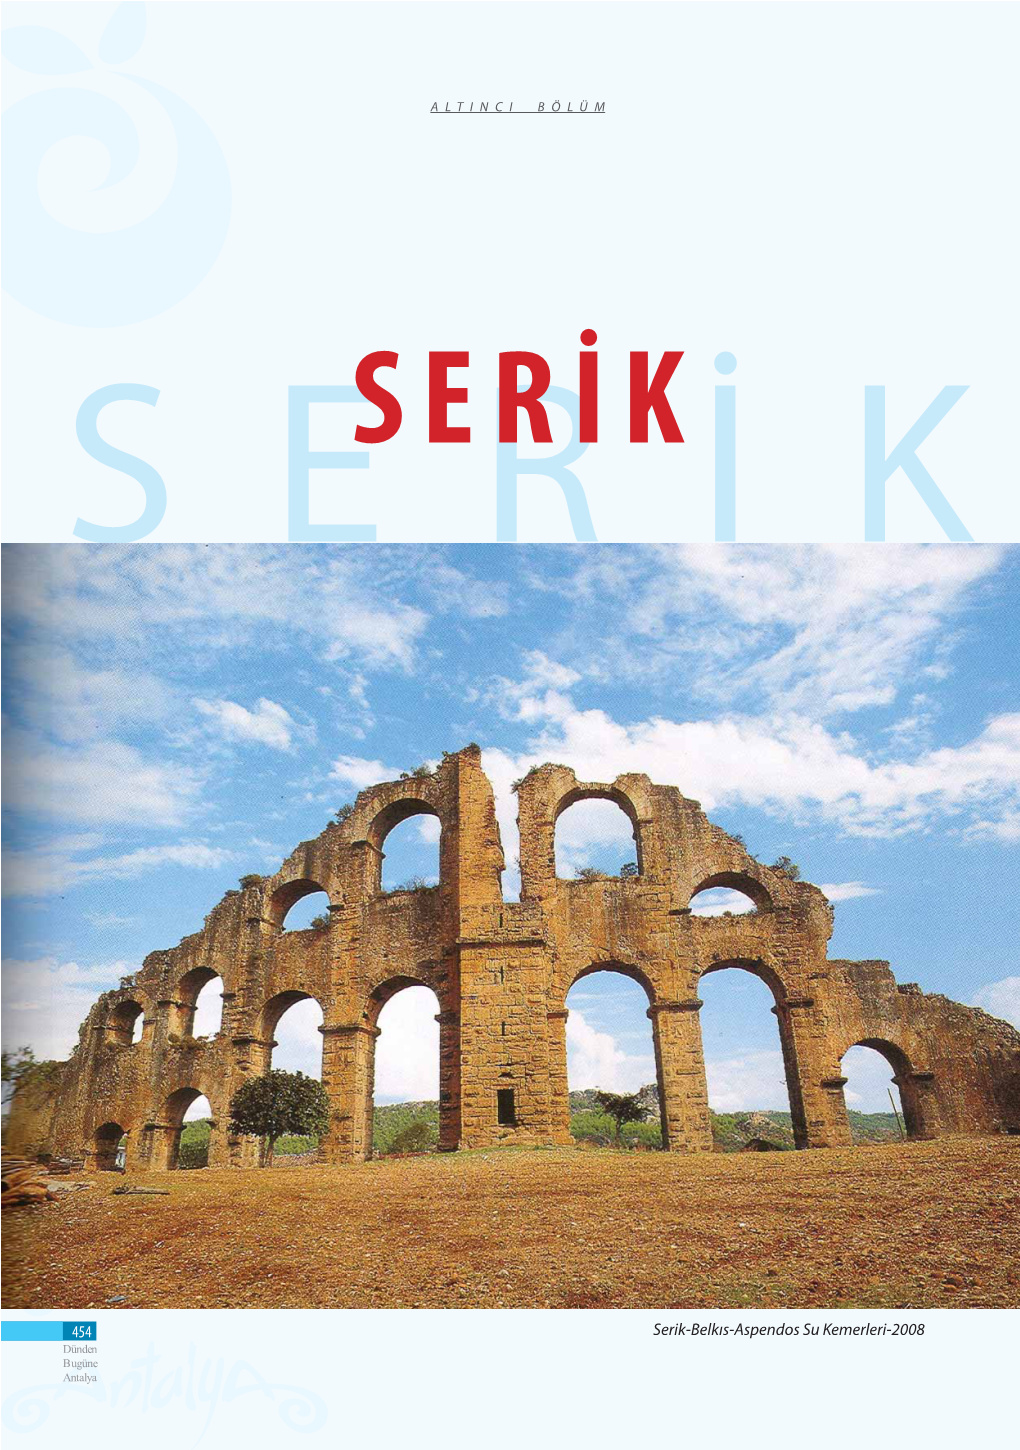 454 Serik-Belkıs-Aspendos Su Kemerleri-2008 Dünden Bugüne Antalya SERİK